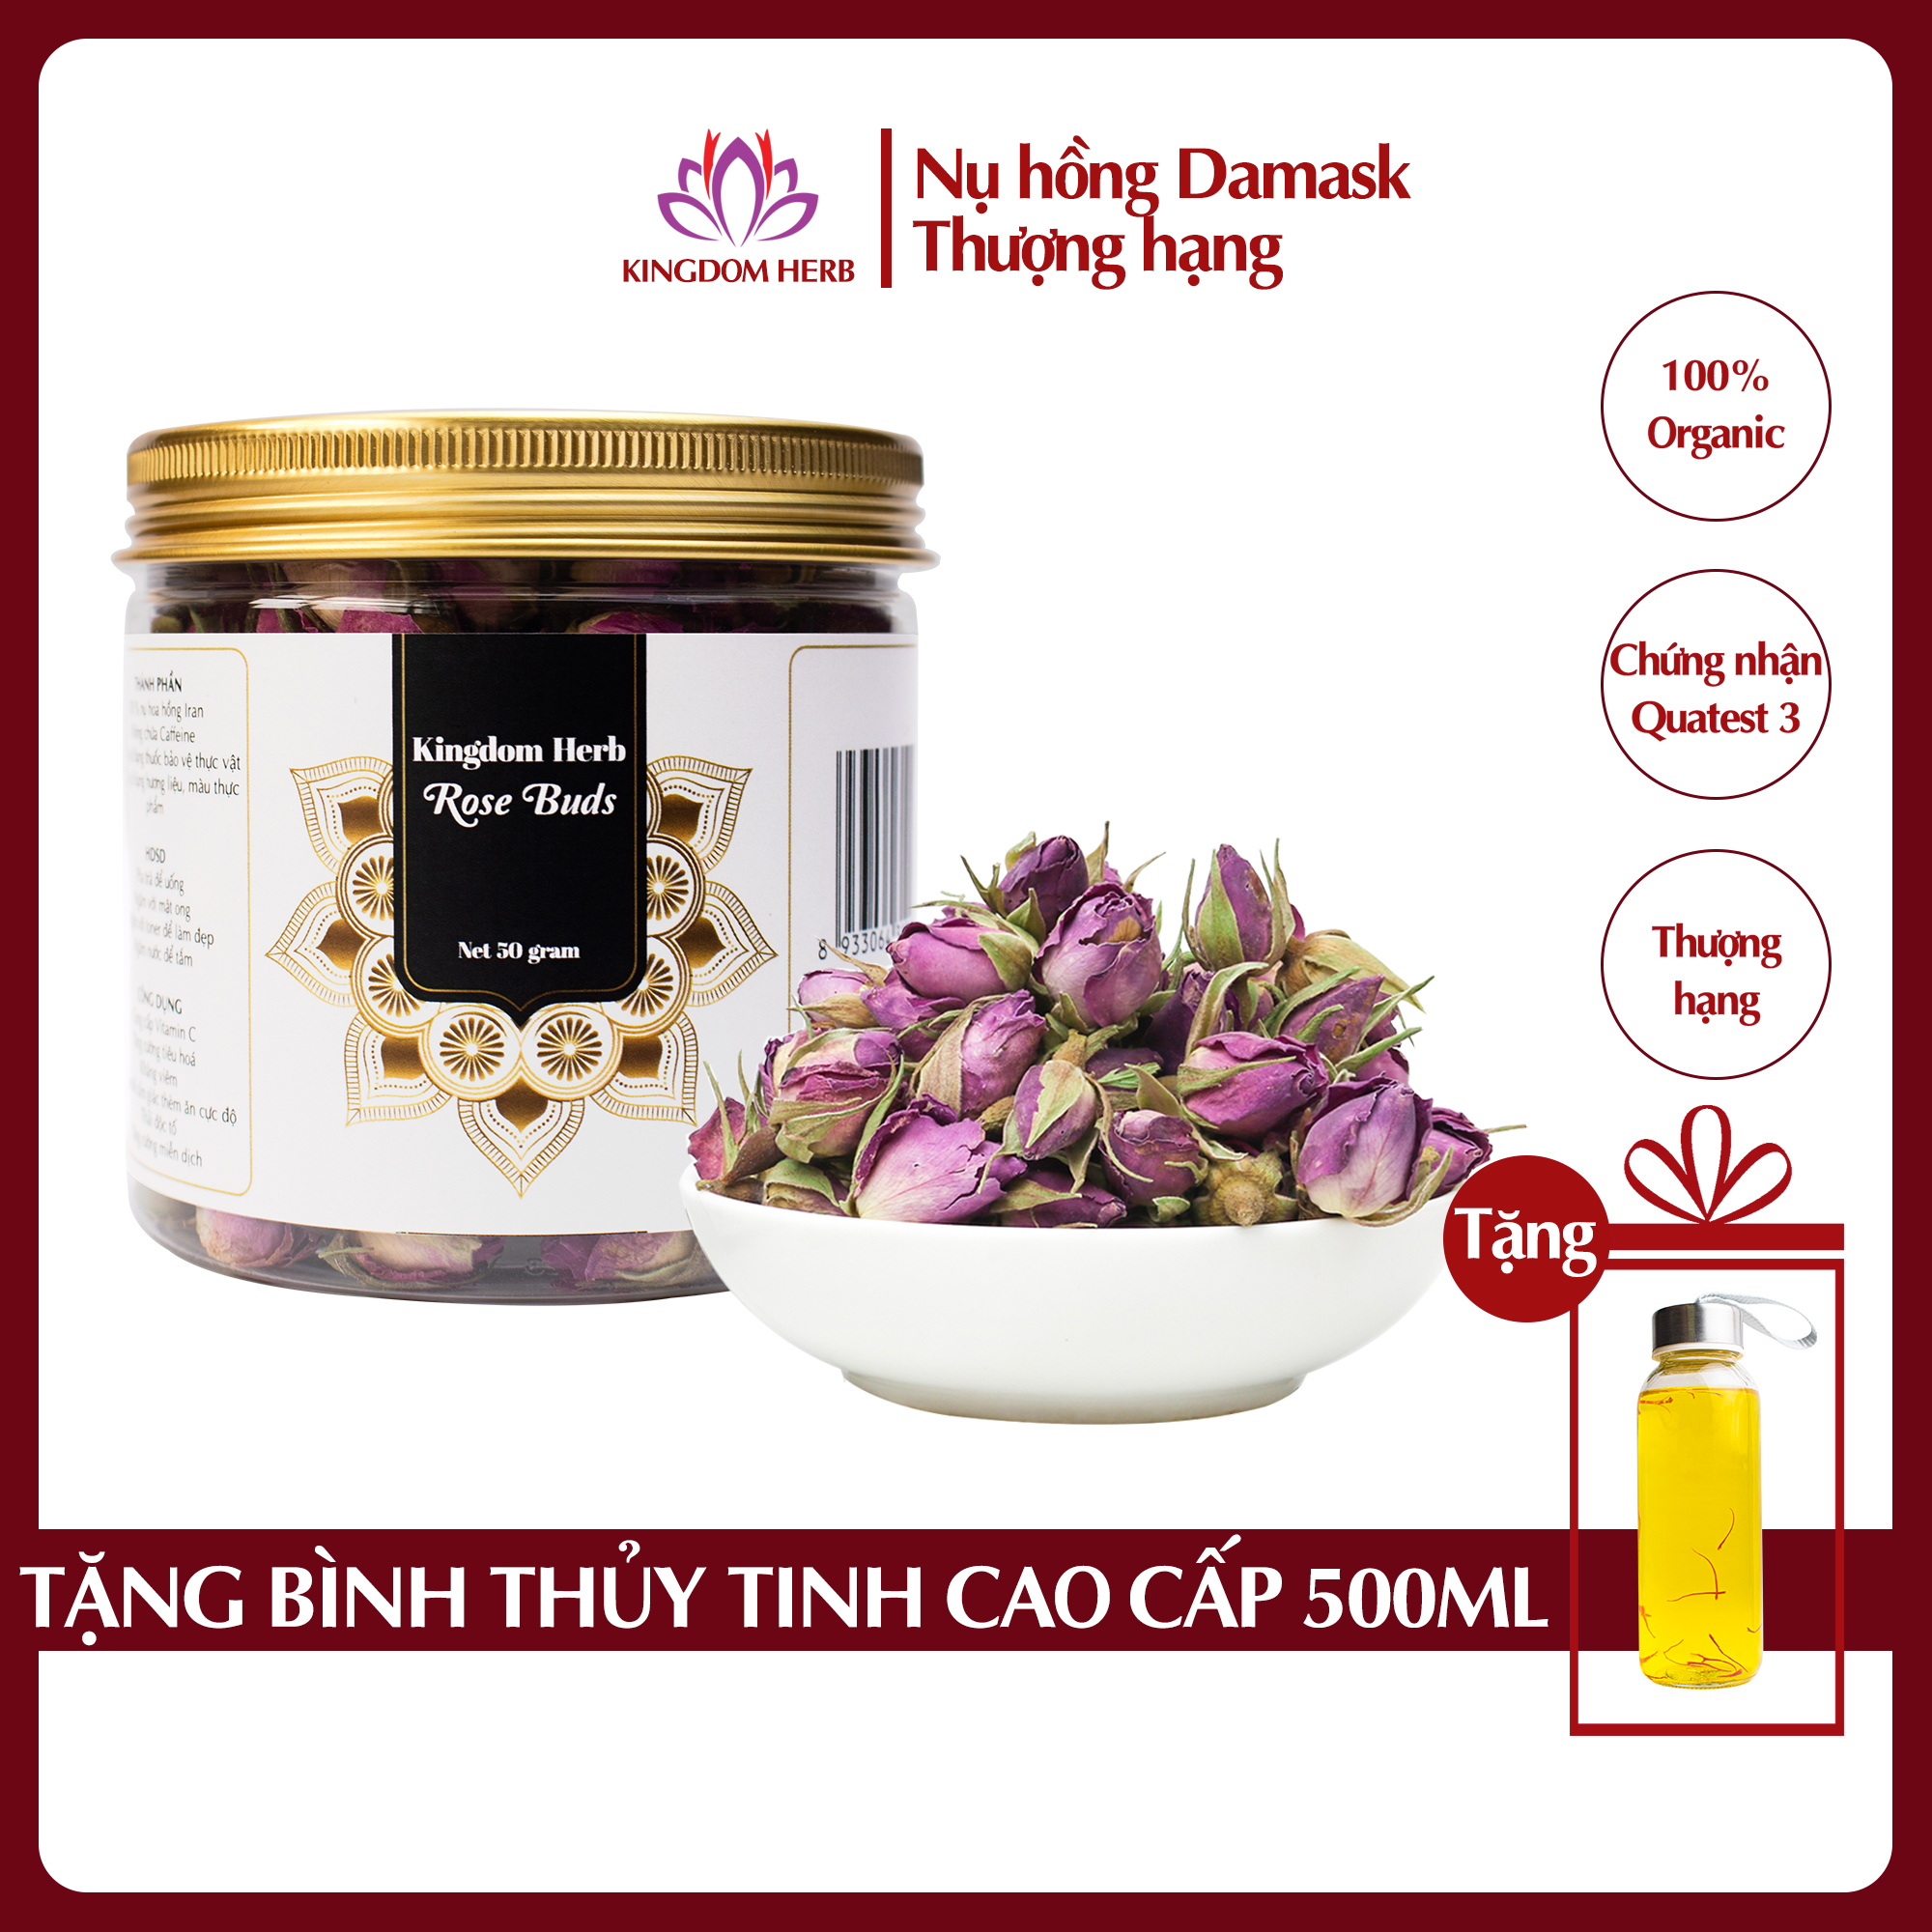 Trà hoa hồng khô Kingdom Herb Iran chính hãng hộp 50 gram, nụ hoa hồng khô thượng hạng (Tặng bình nước thủy tinh)